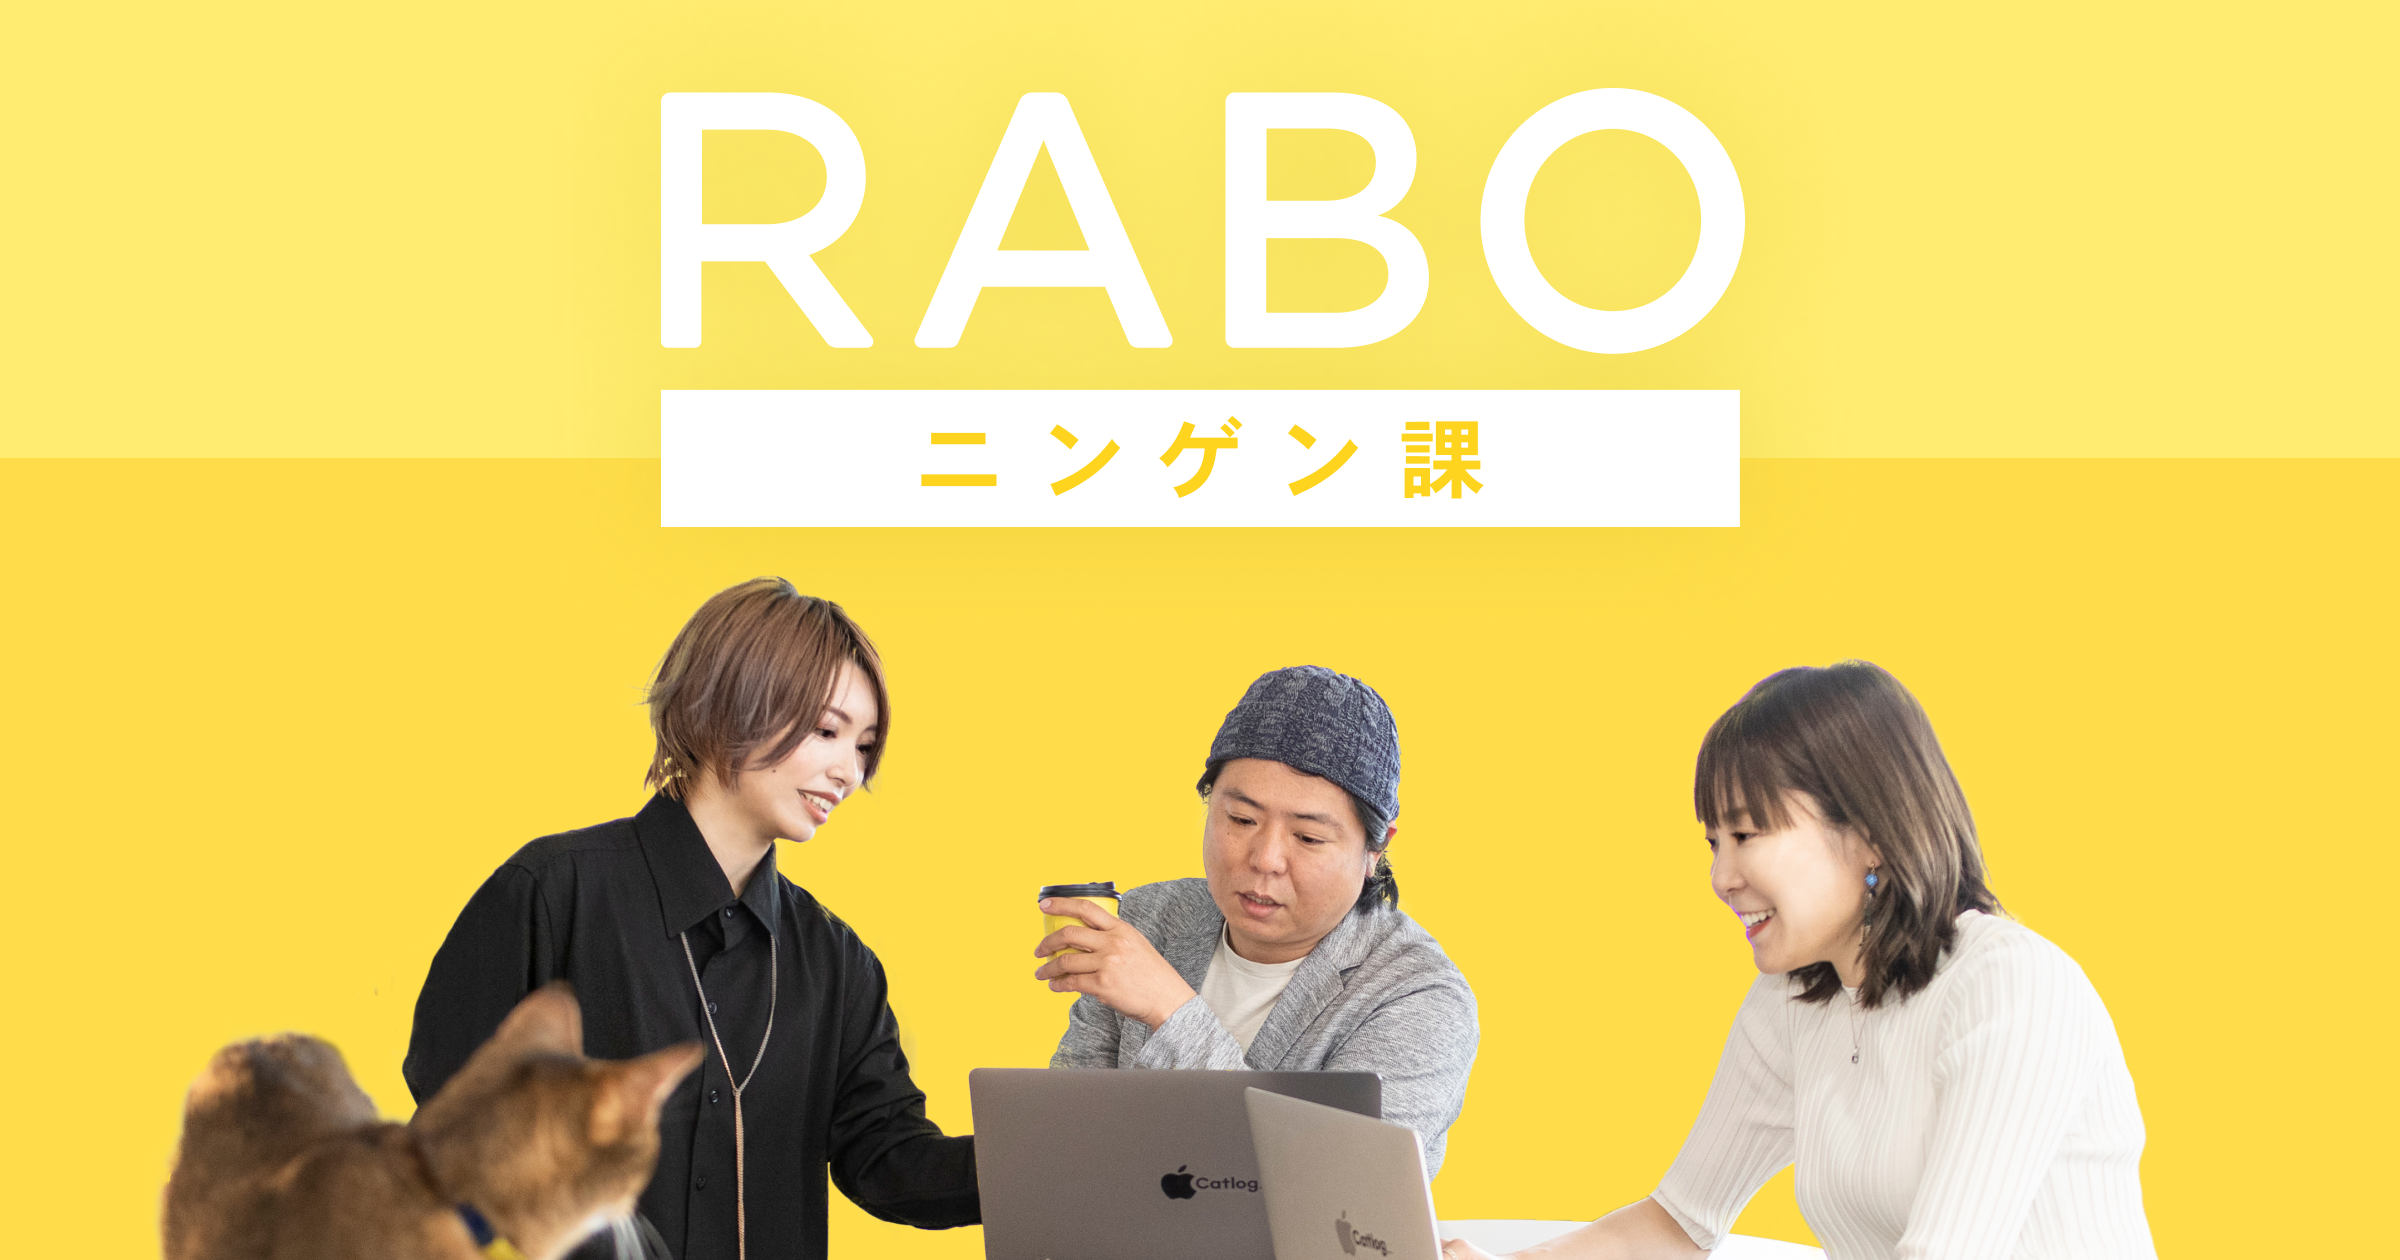 新しいオウンドメディア『RABOニンゲン課』を開設！RABOの猫様ではなくニンゲンにフォーカスした記事をお届け。第1回は代表伊豫へ、RABOのニンゲンと組織についてインタビュー